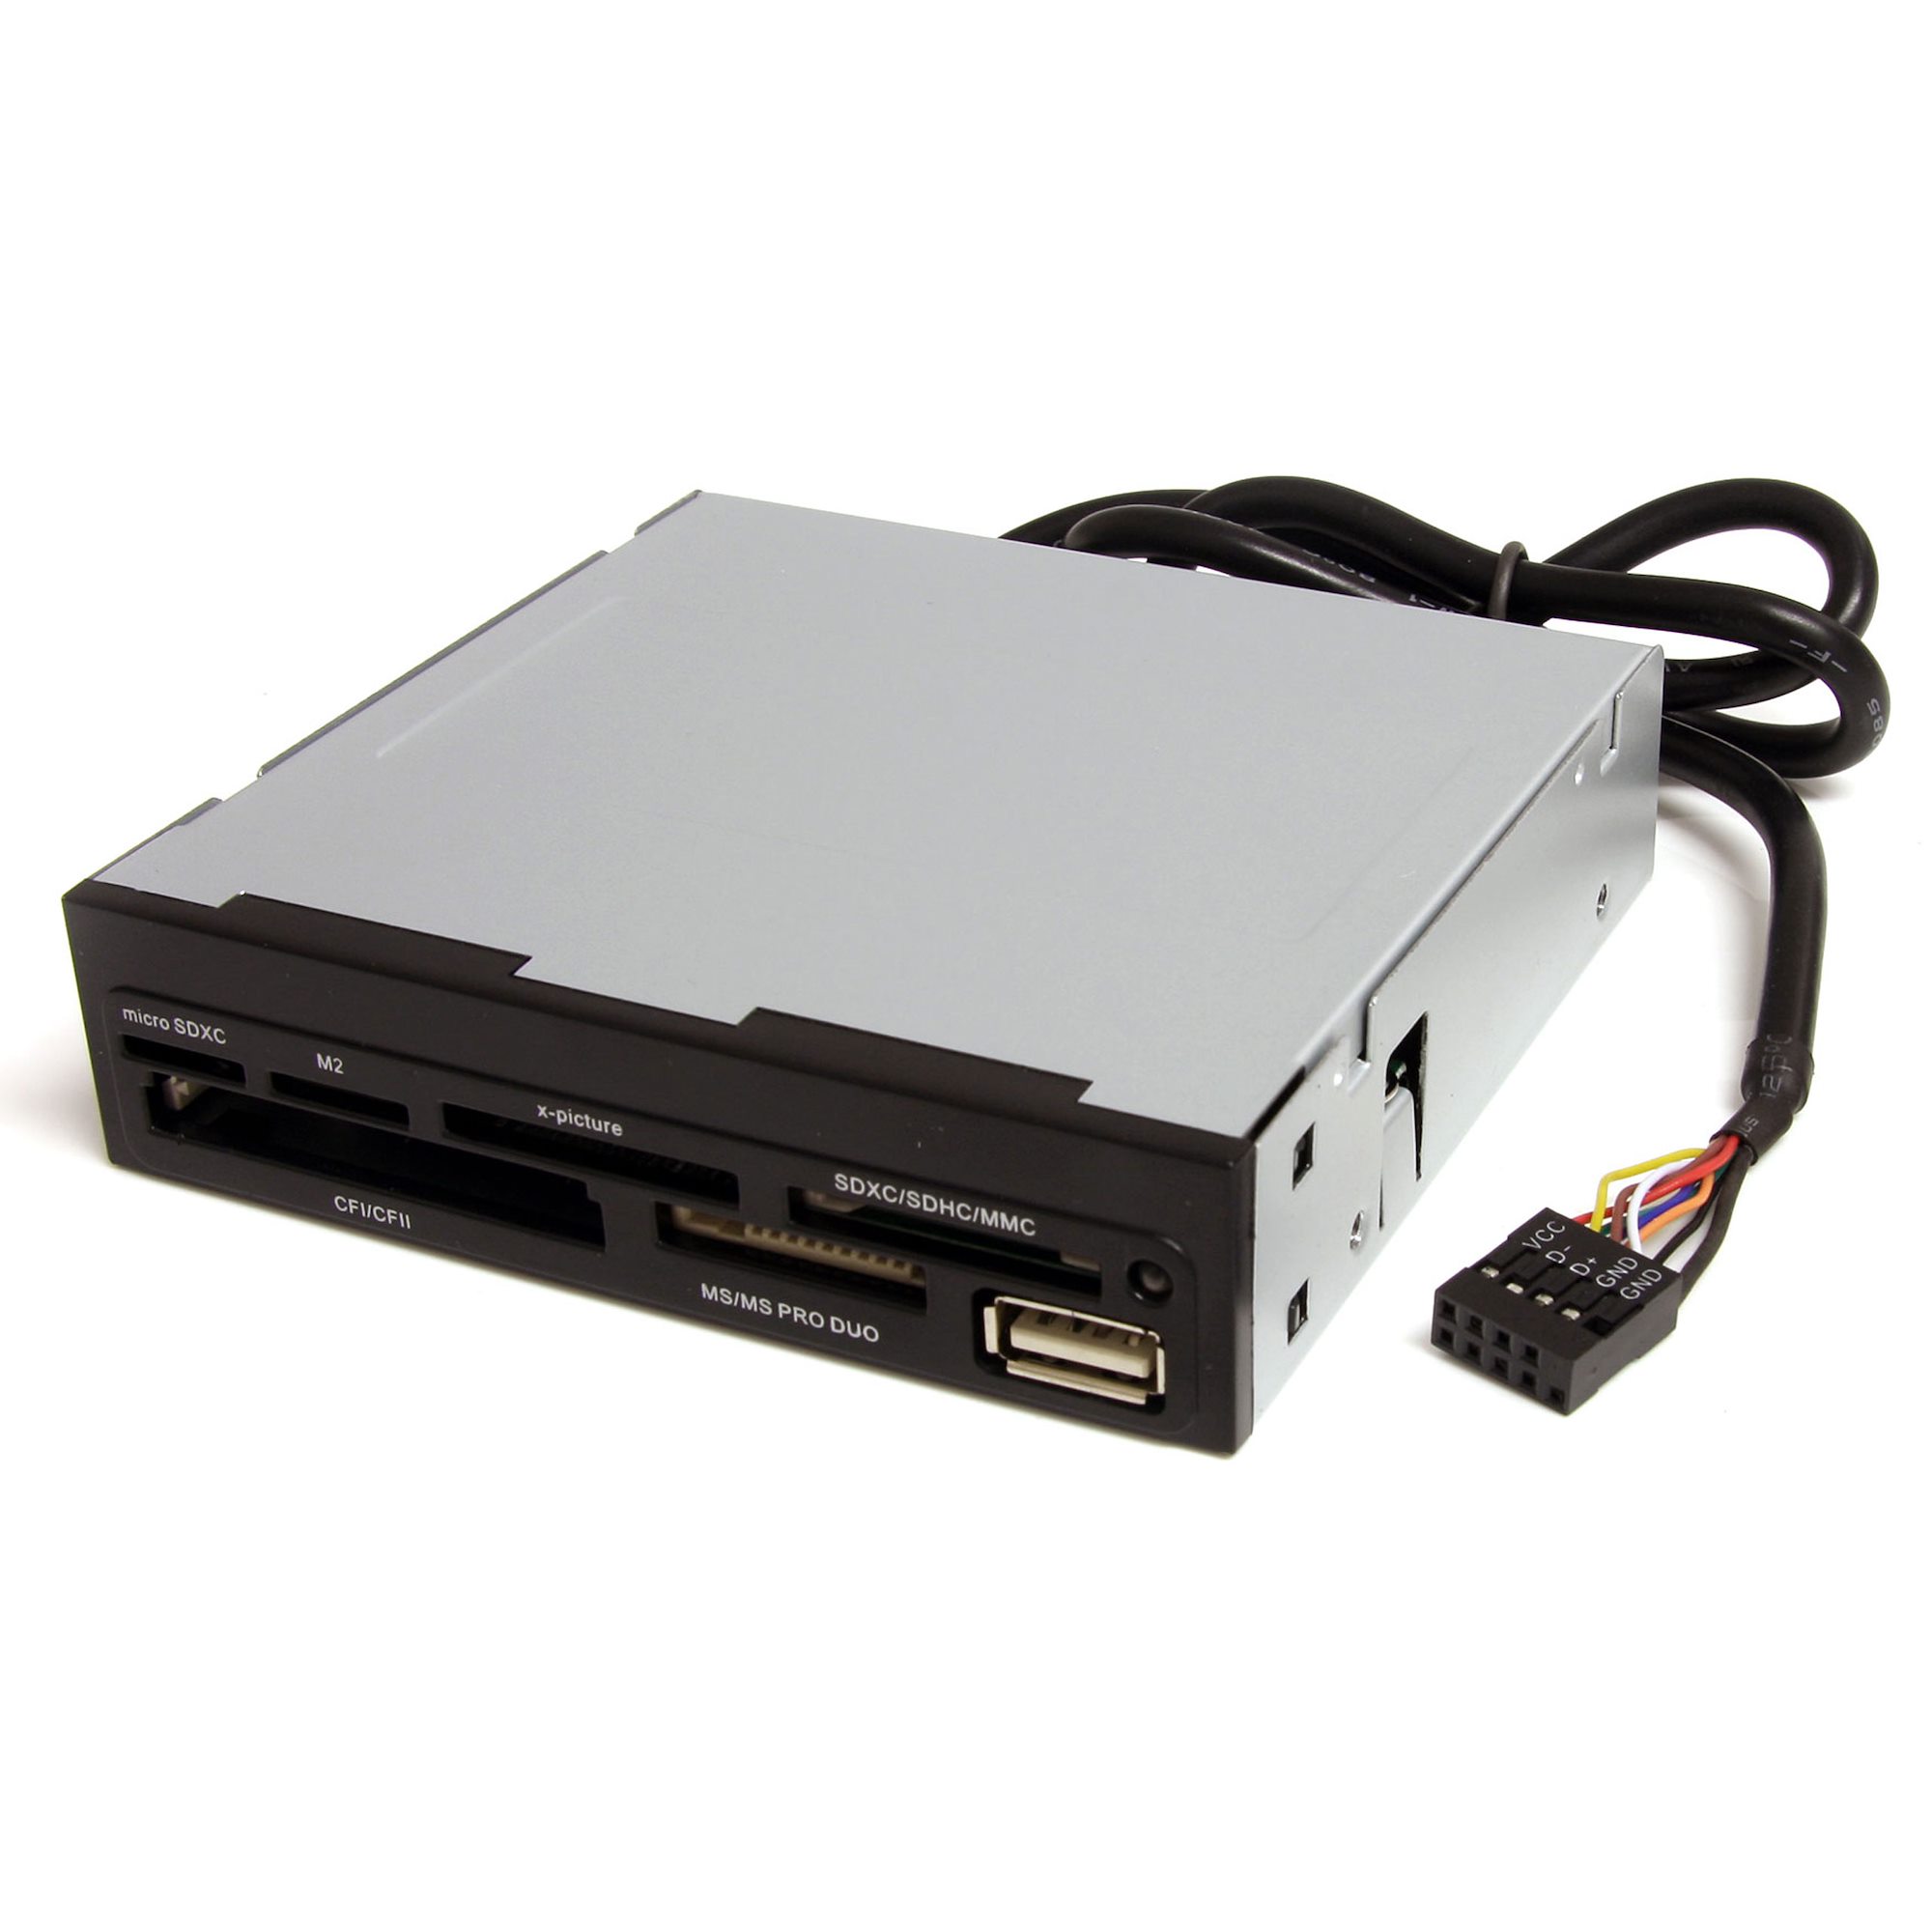 Lecteur de cartes mémoire interne de 3,5 pouces avec port USB 2.0 -  Multicartes 22-en-1 - Noir